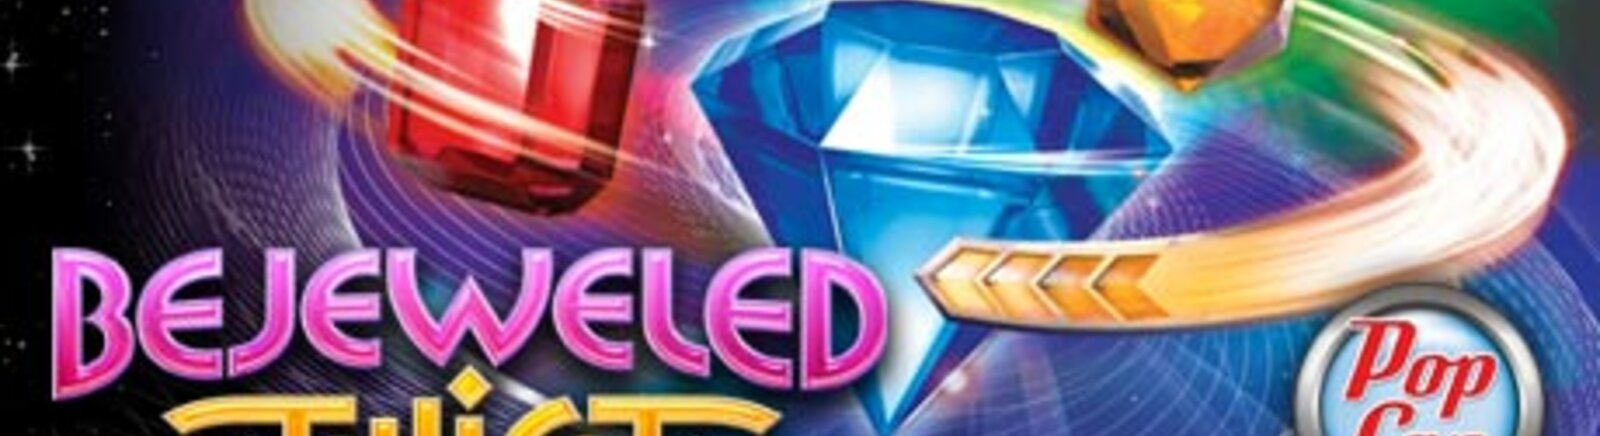 Дата выхода Bejeweled Twist  на PC, Nintendo DS и Nintendo DSi в России и во всем мире